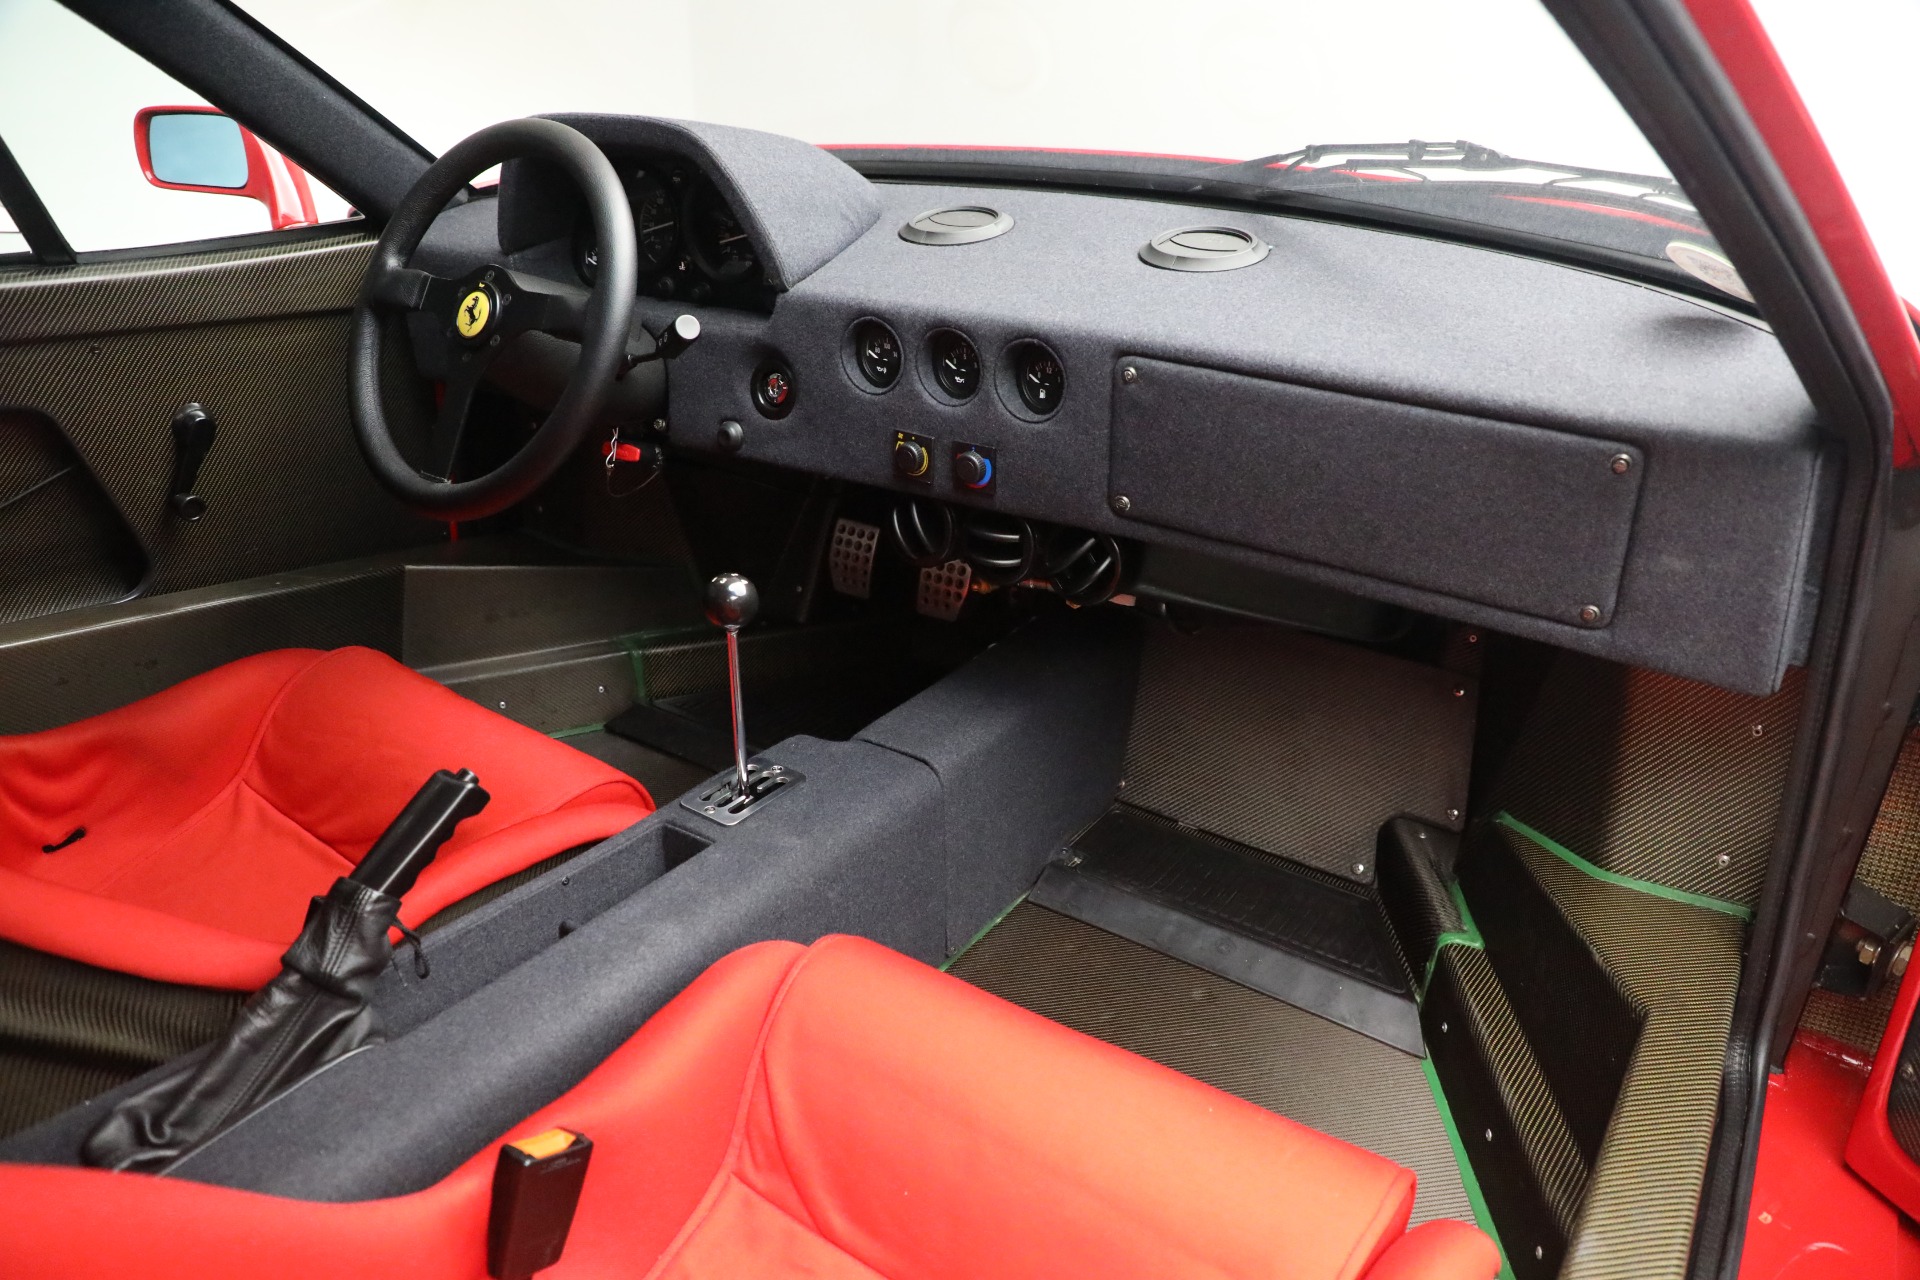 FOR SALE: 1990 Ferrari F40